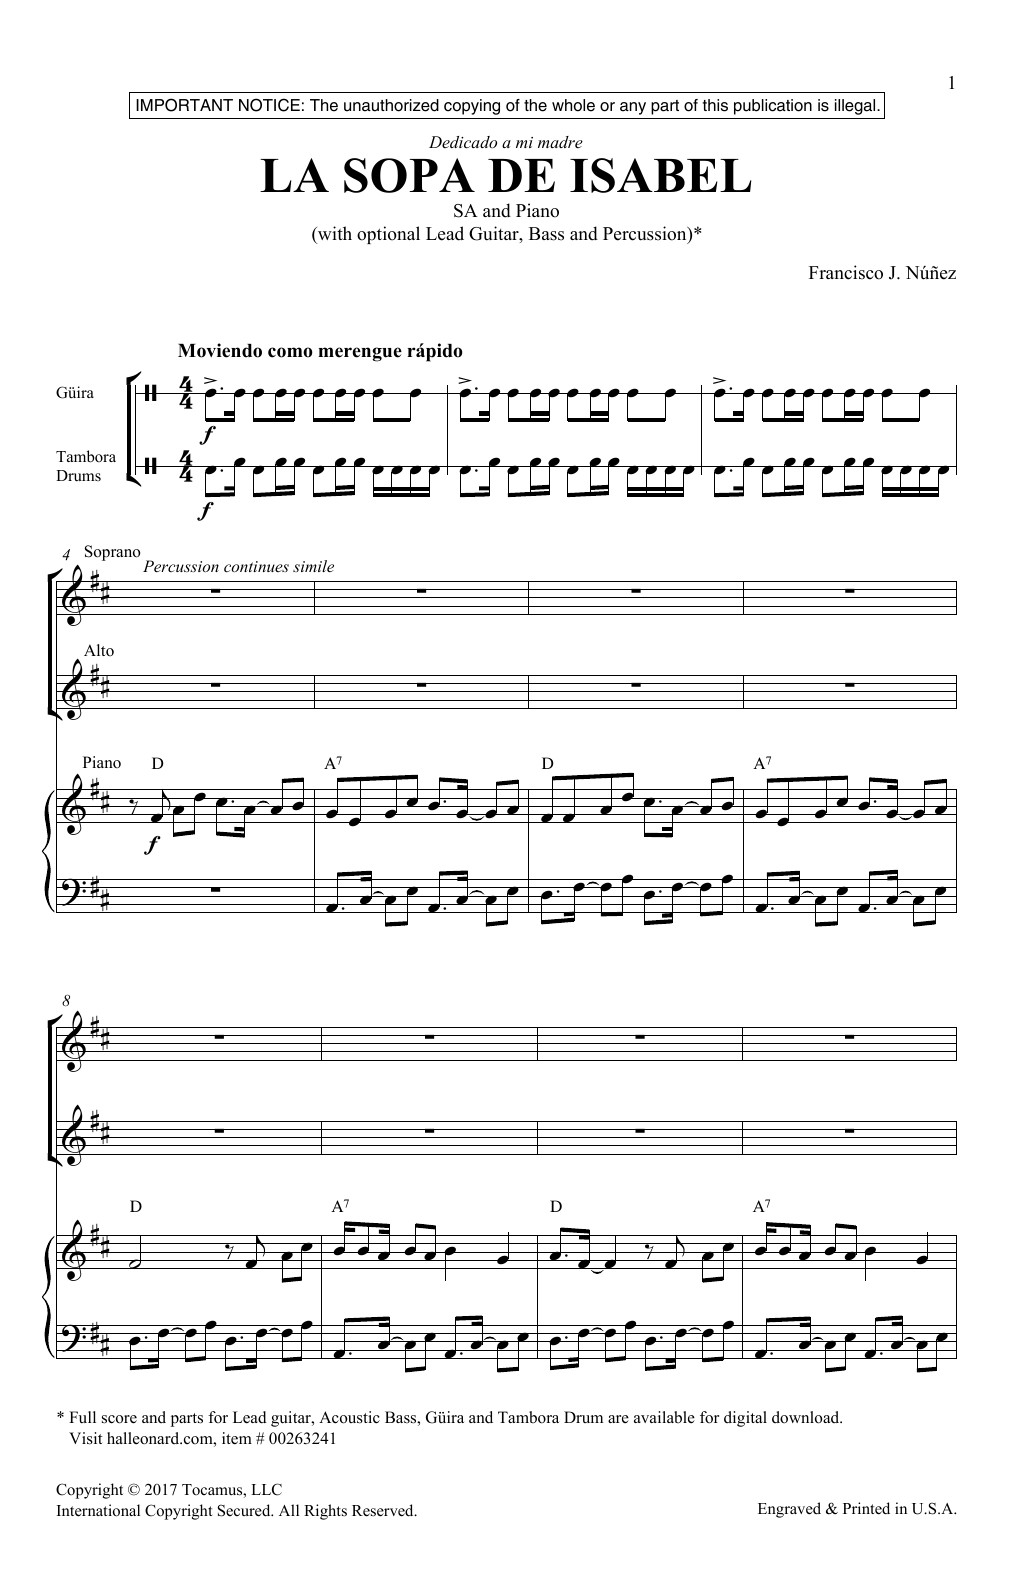 Francisco Nunez La Sopa De Isabel sheet music notes and chords arranged for 2-Part Choir